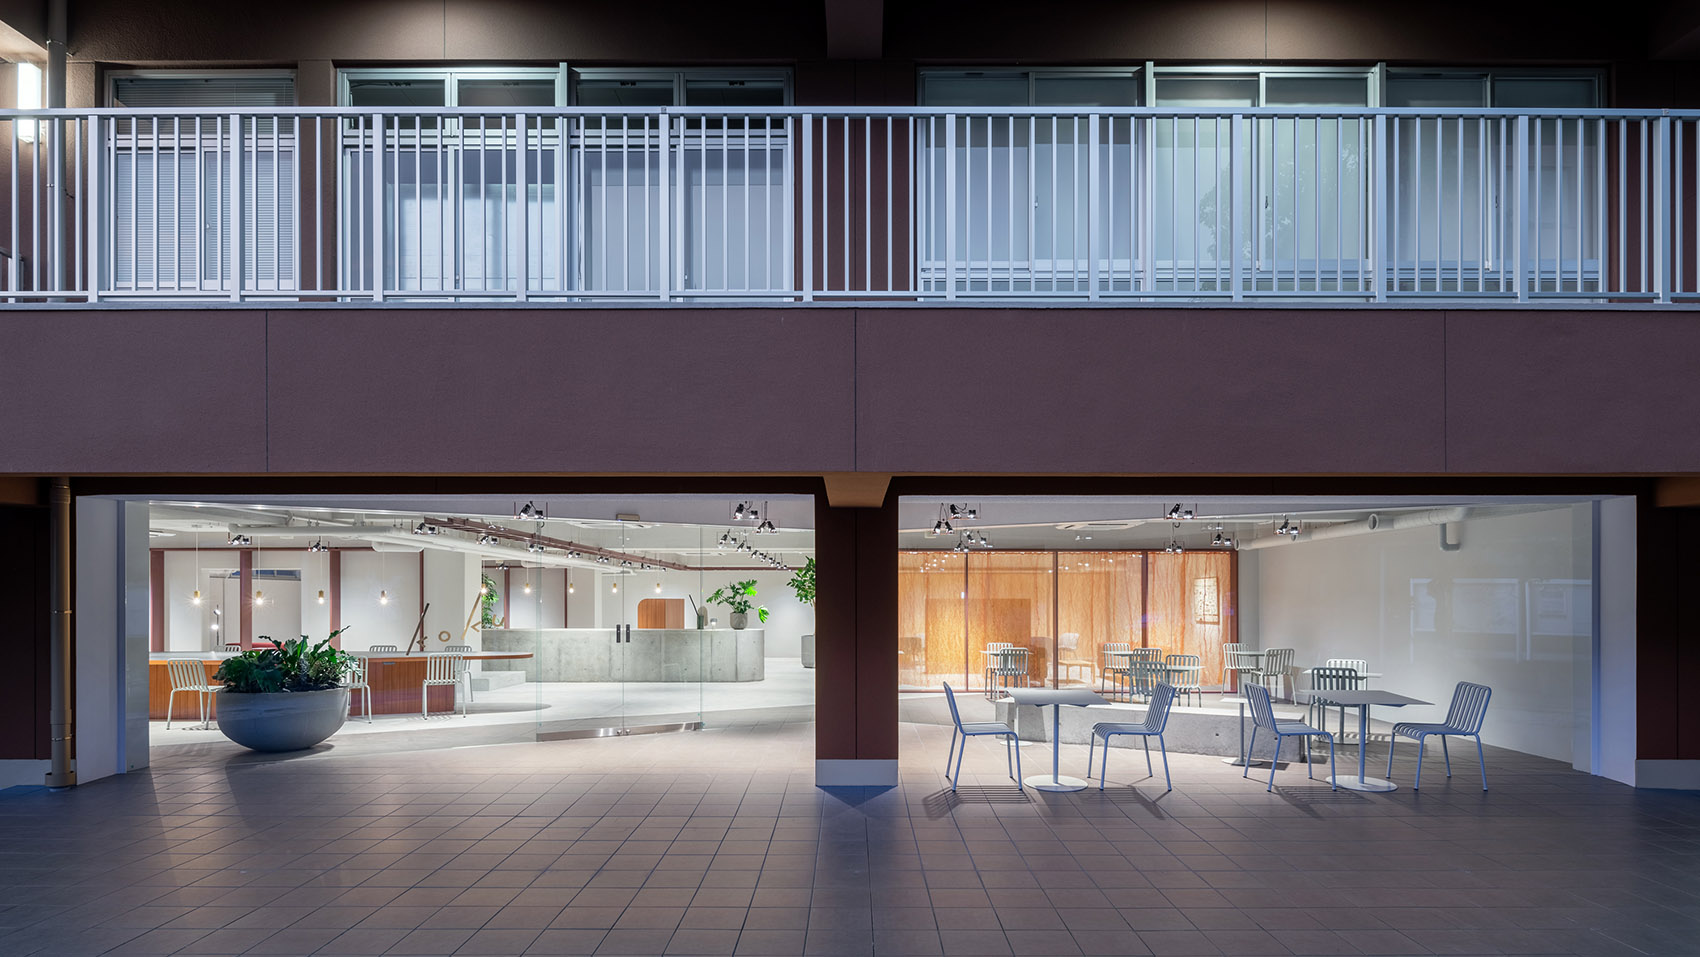 日本新药京都总部KOKU休闲空间/边界模糊的连续开放空间-3